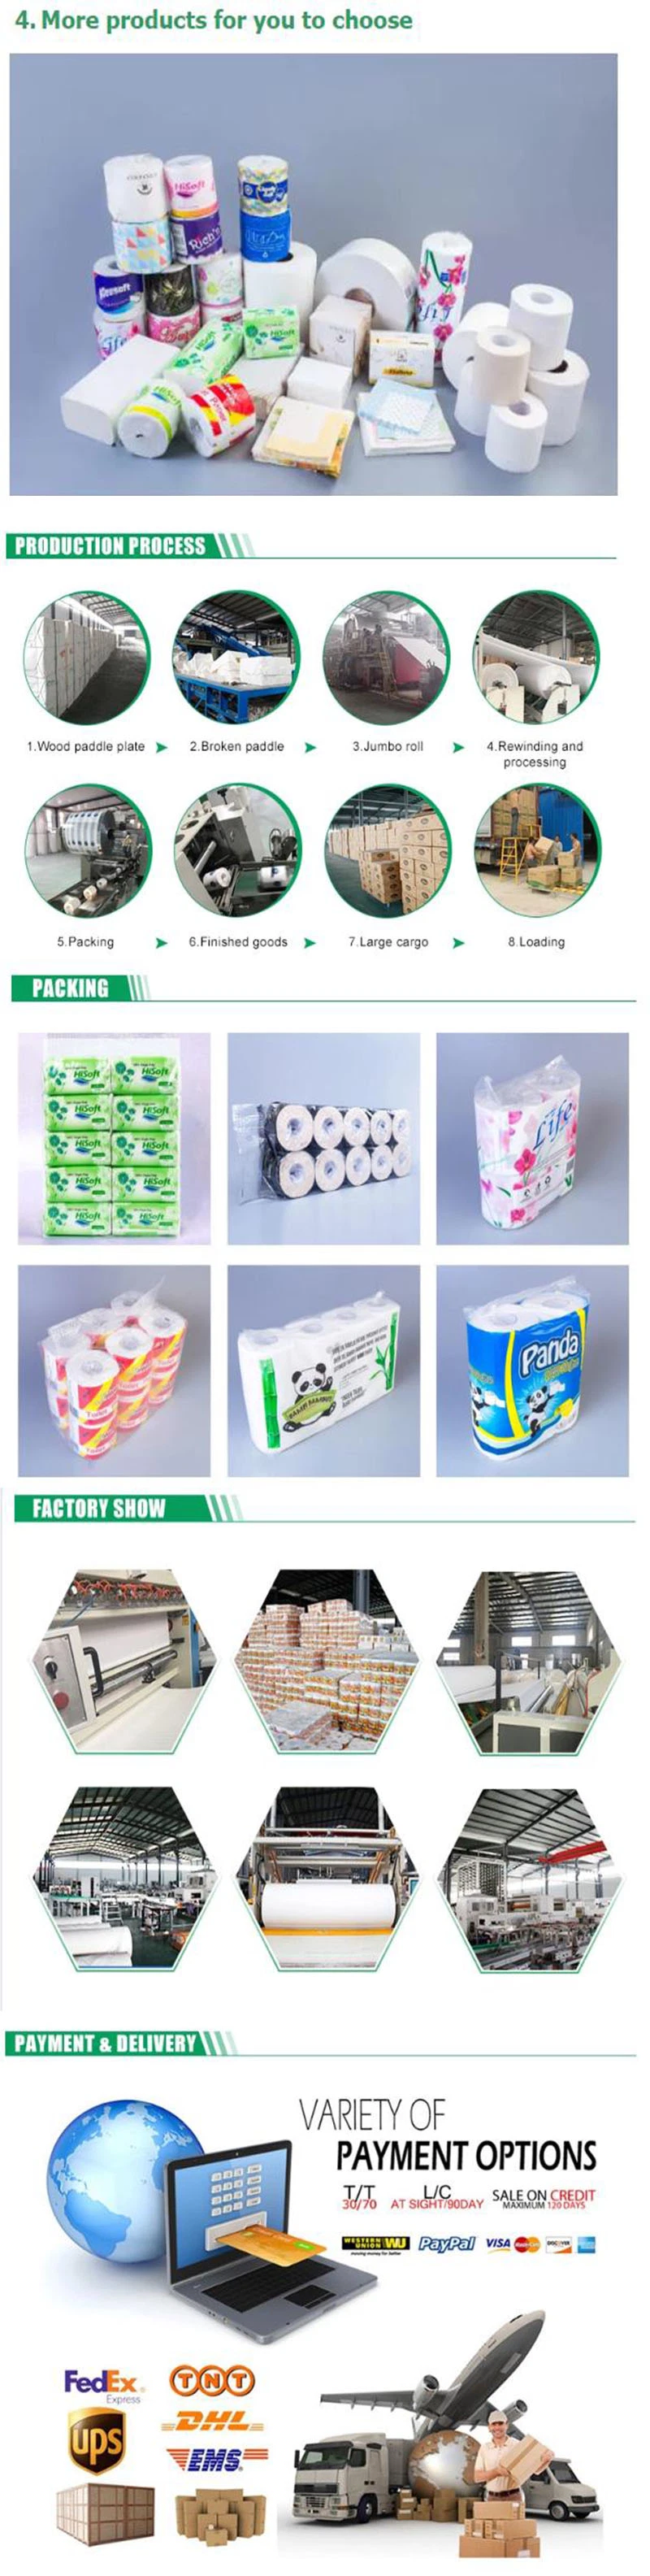 Wholesale Recycletoilet Paper Toilet Tissue